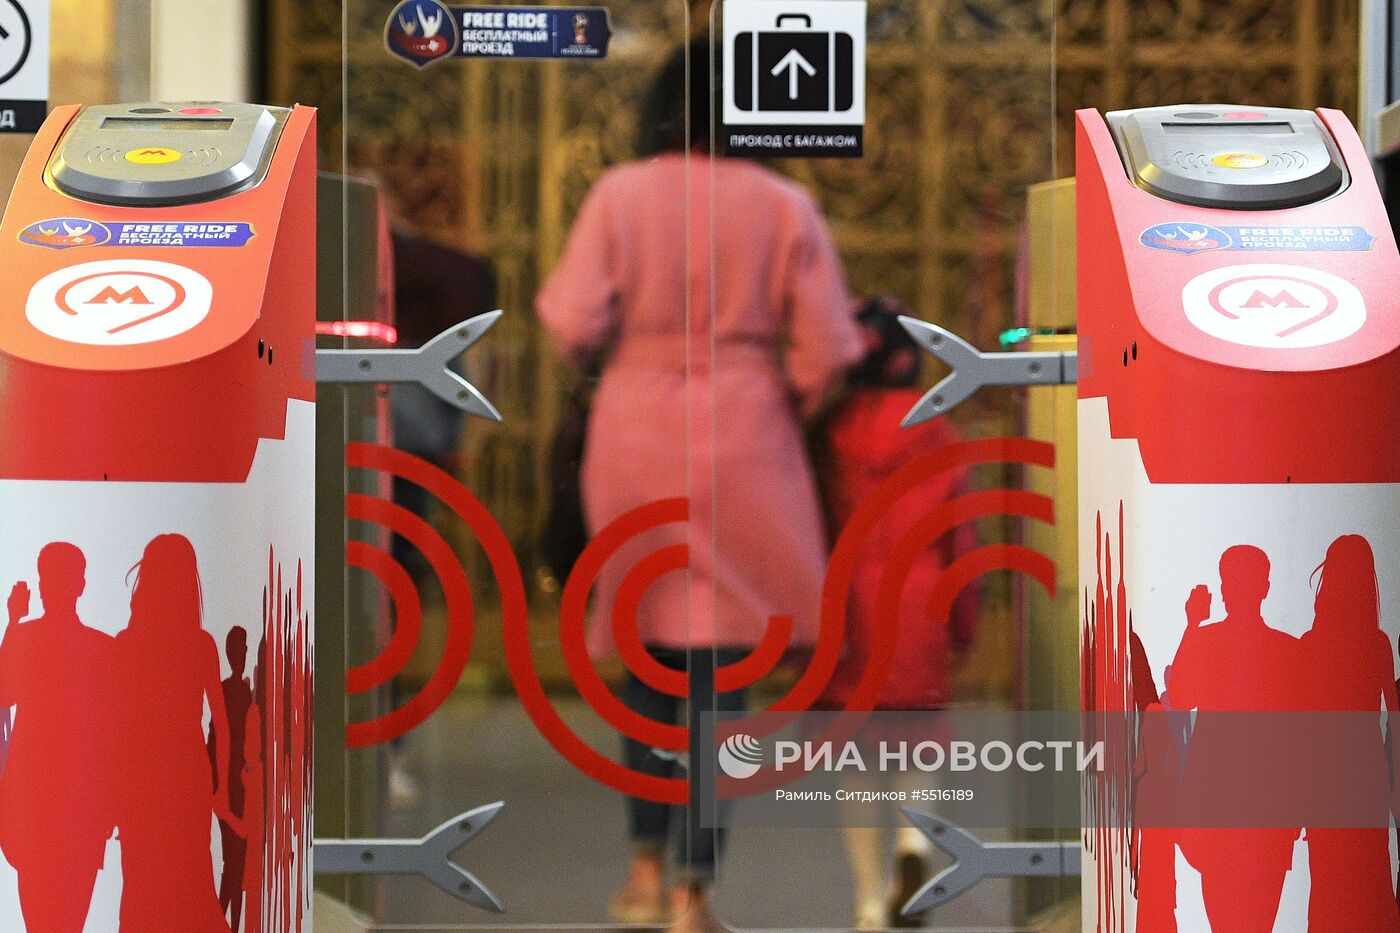 Турникеты для бесплатного прохода болельщиков ЧМ-2018 установили в Московском метрополитене